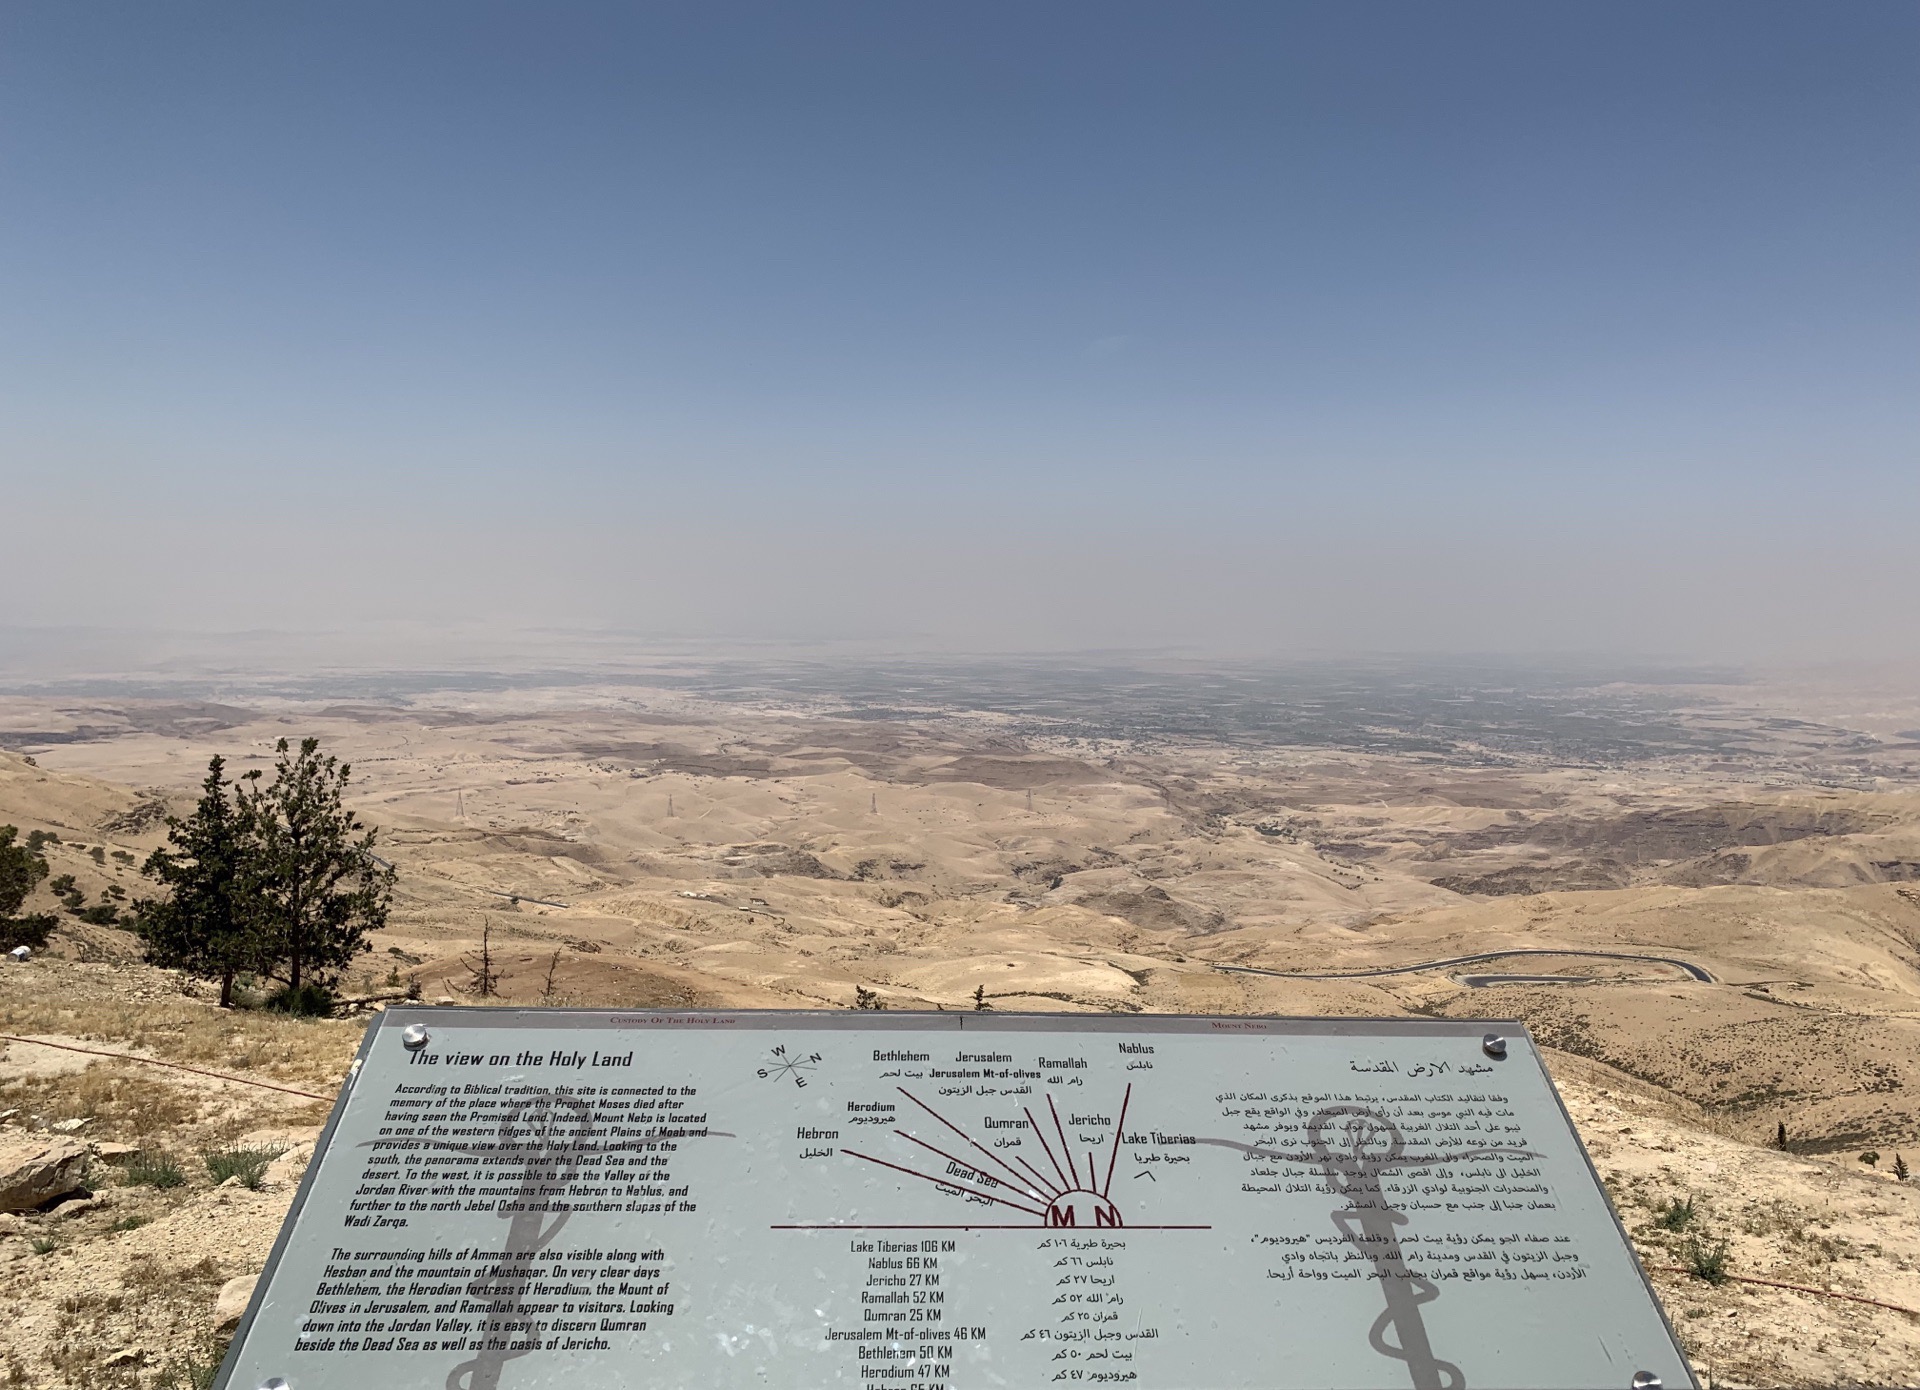 尼波山——是约旦非常值得敬畏的圣地之一，这里是摩西升天之地。巨大的钢制盘蛇十字架，象征着摩西行神迹的